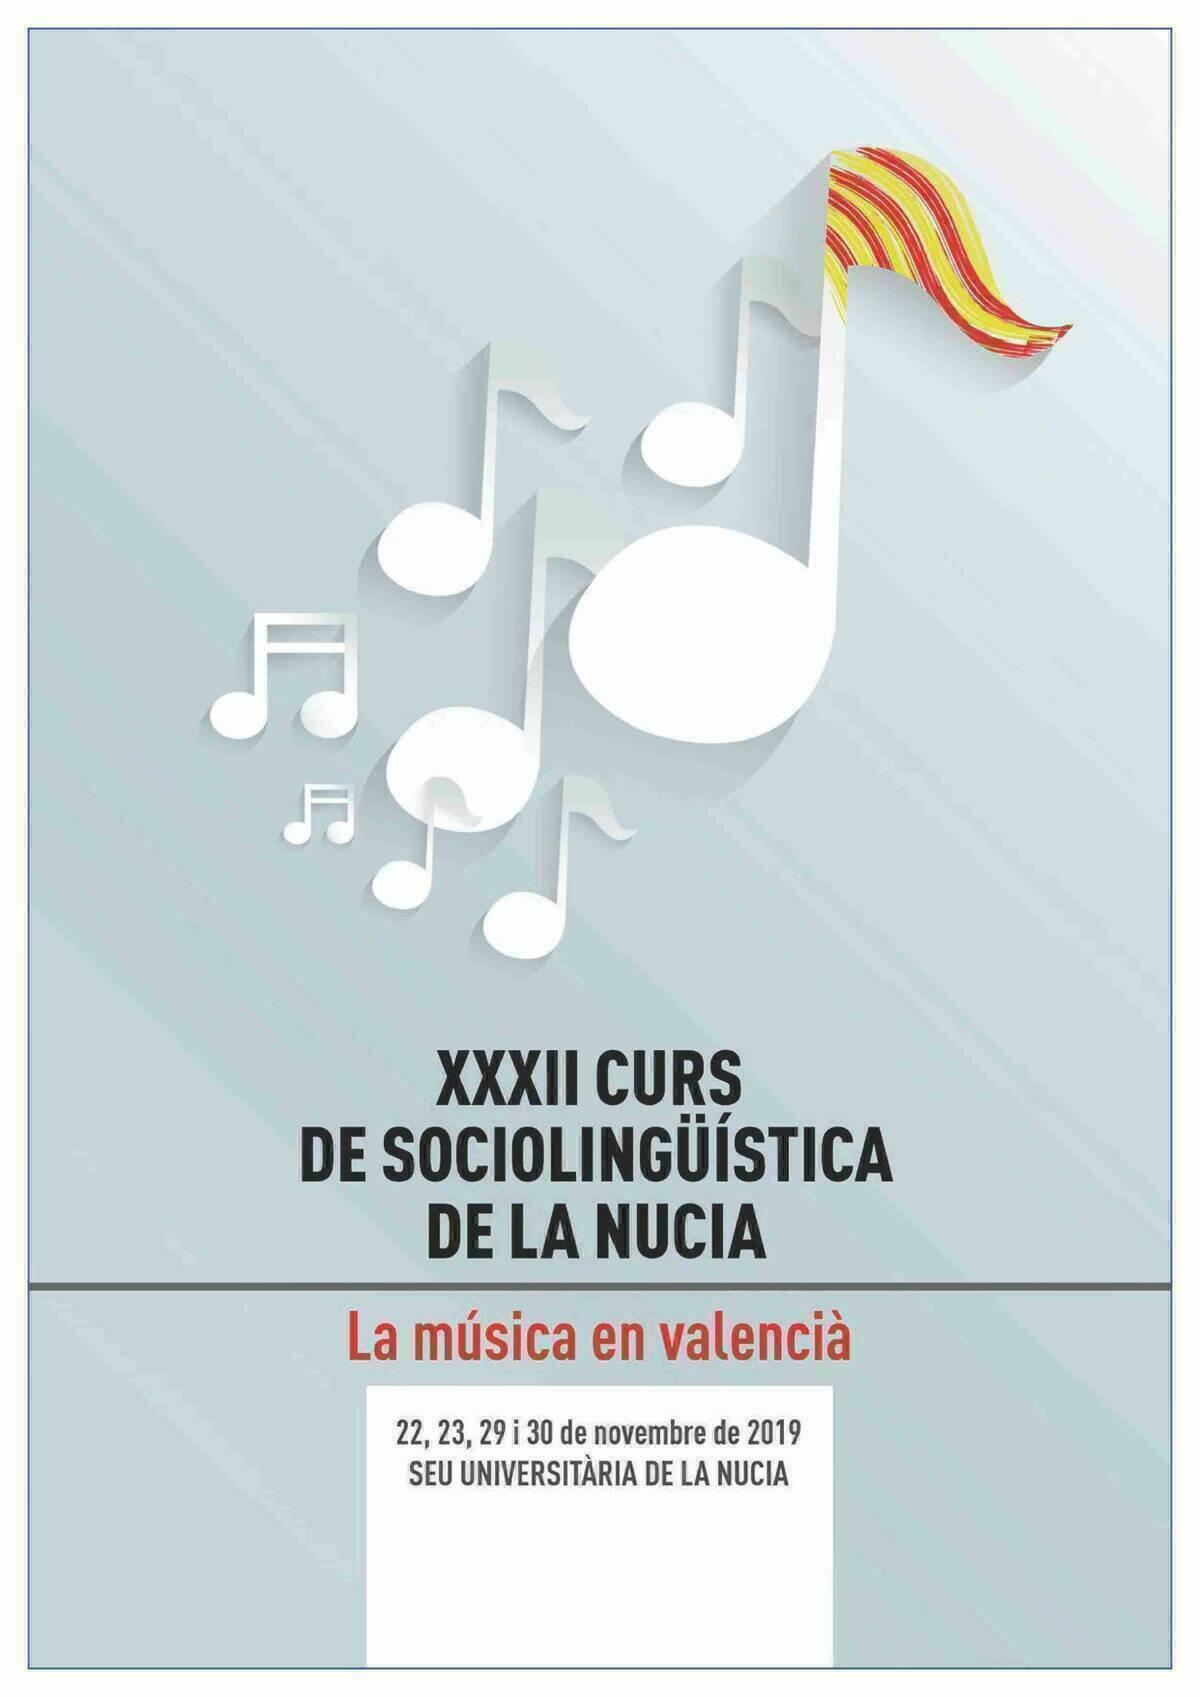 La Nucía · El XXXII Curs de Sociolingüística abordará “la música en valencià” 